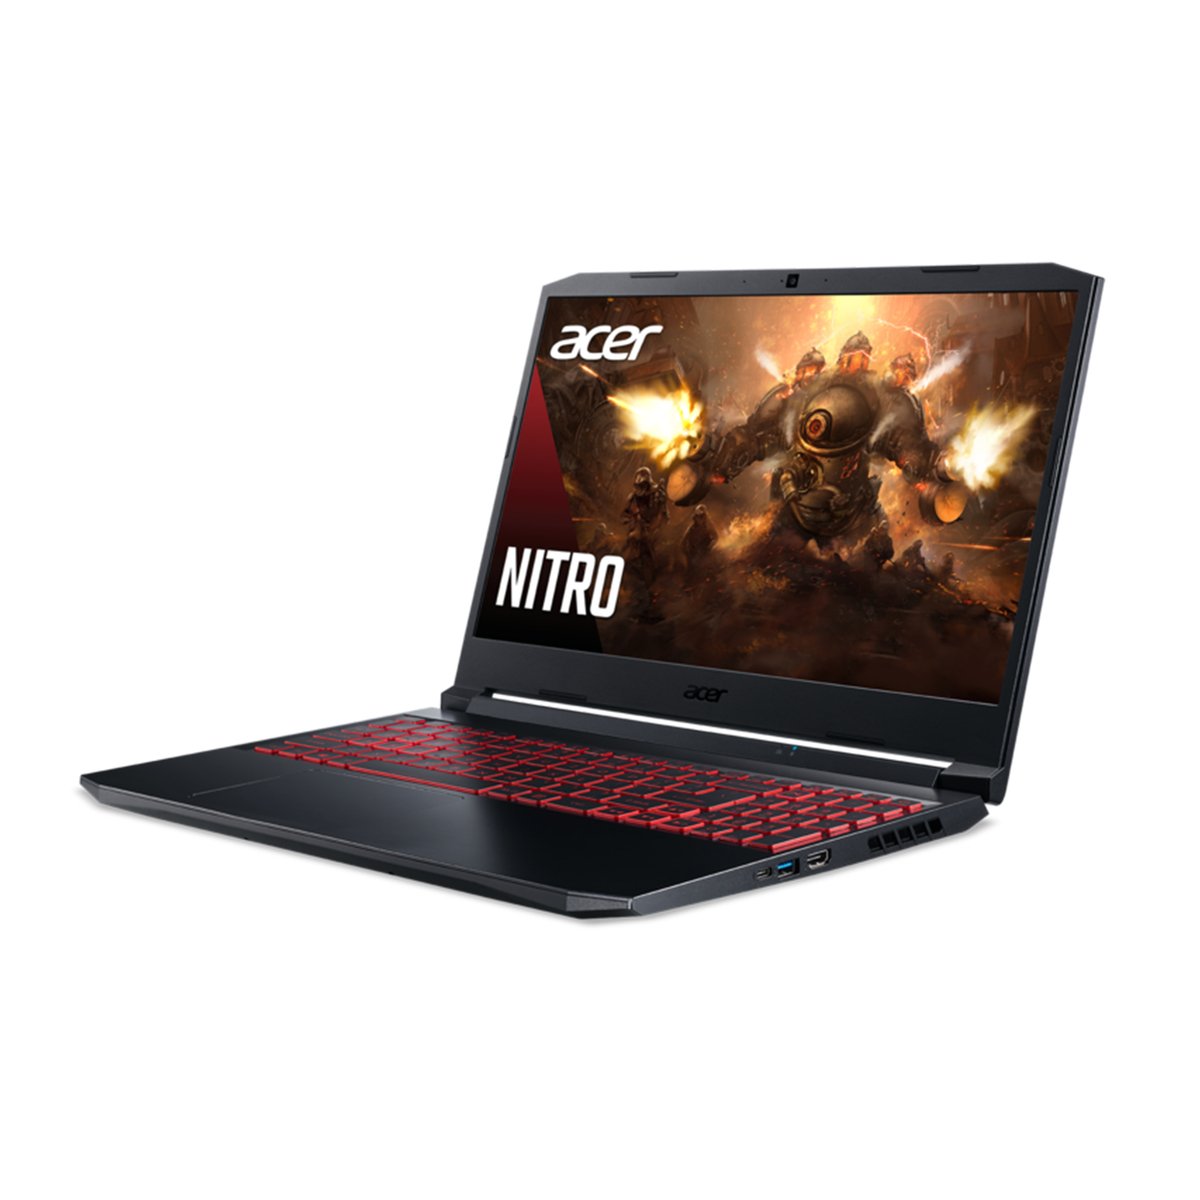 Acer Gaming Laptop Nitro 5-NHQBREM004,AMD Ryzen 7,24GB RAM,1TB SSD,8GB VRAM,15.6" FHD,Windows 10,English/Arabic Keyboard